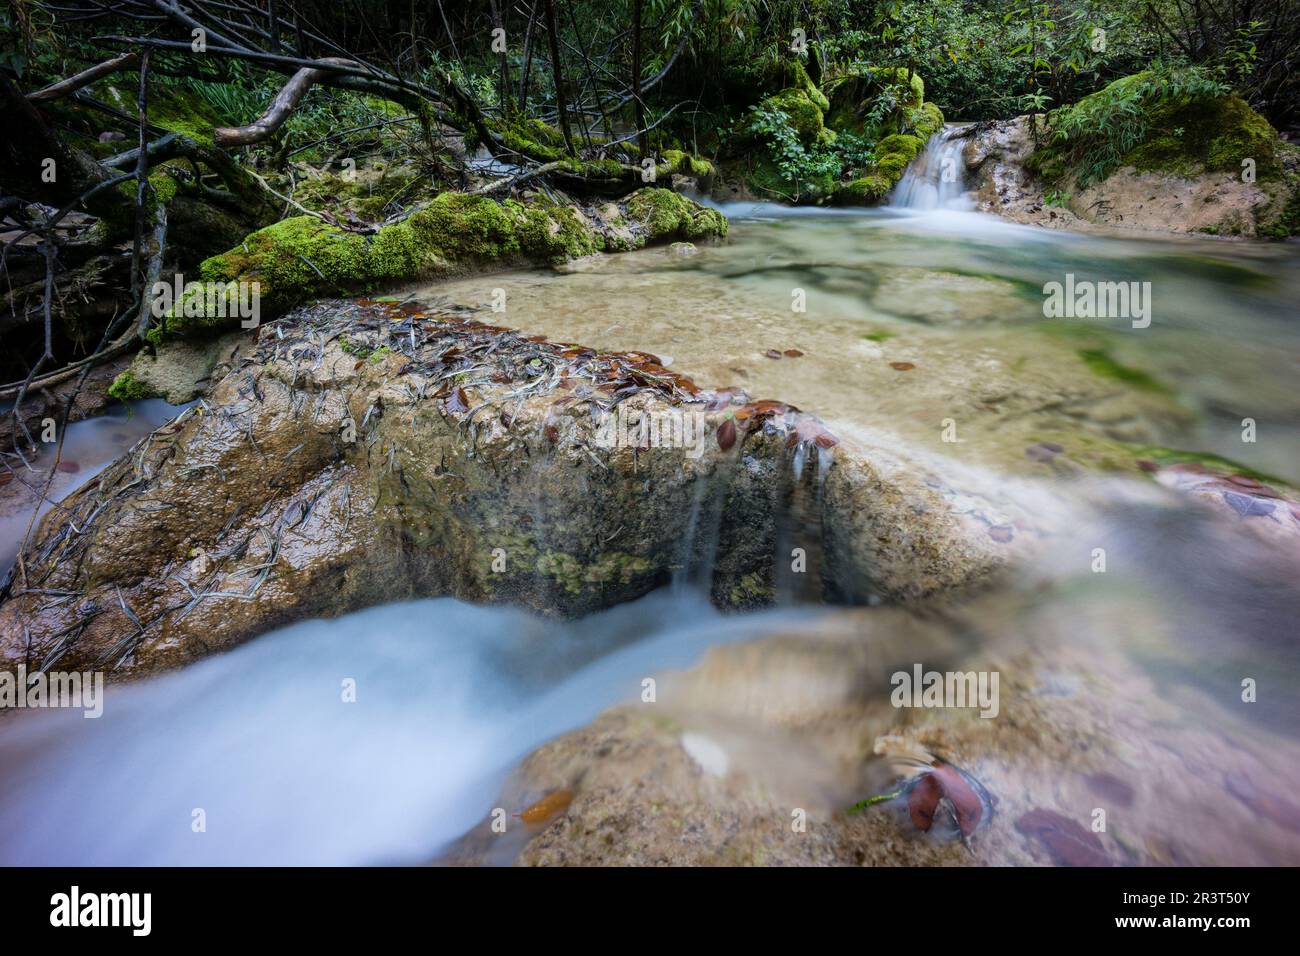 nacedero del rio Urederra, parque natural de Urbasa-Andia,comunidad foral de Navarra, Spain. Stock Photo